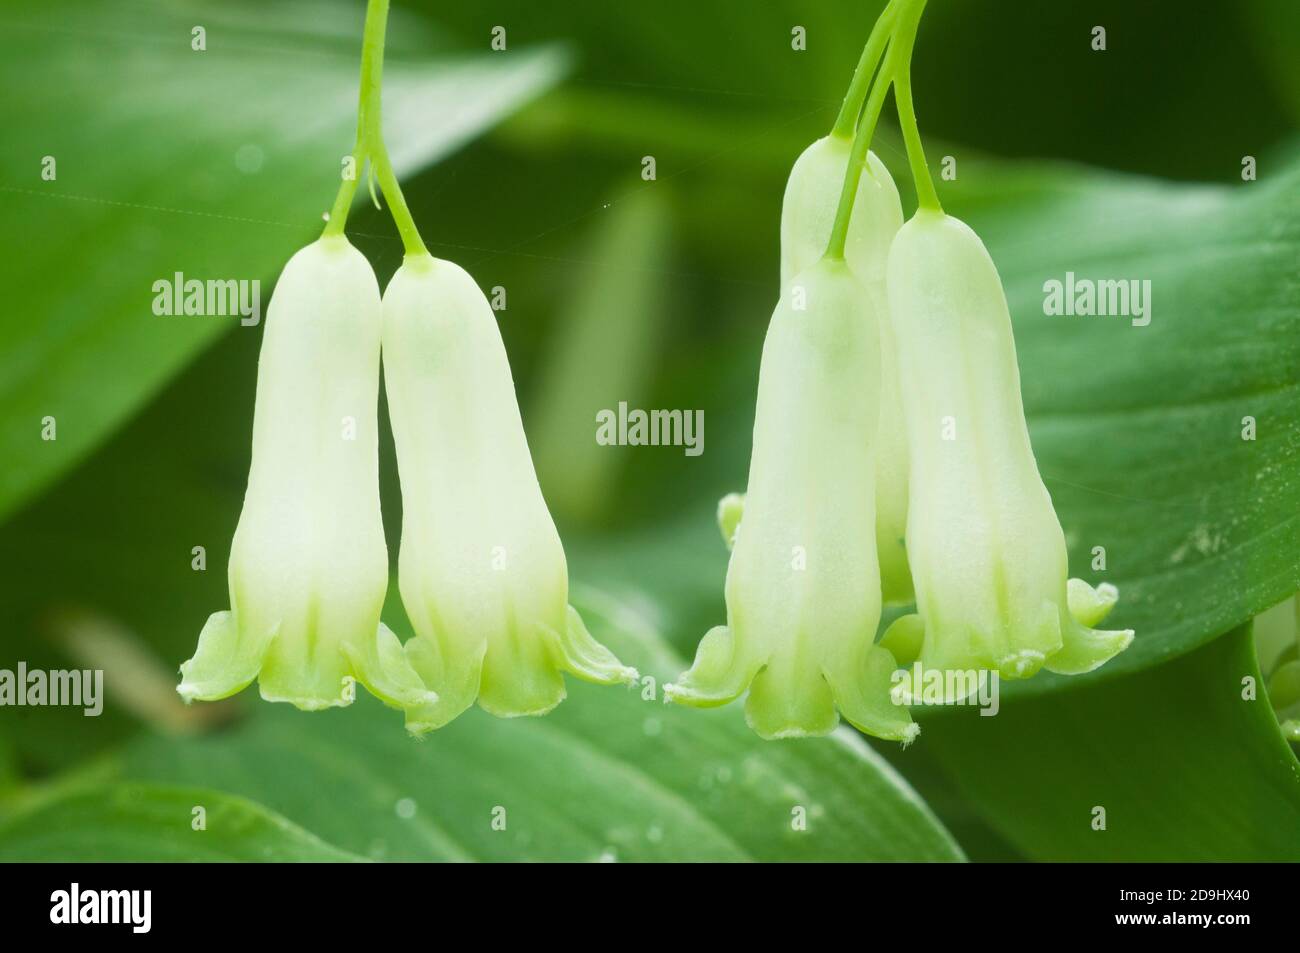 Salomone guarnizione (Polygonatum) fiori close up shot Foto Stock